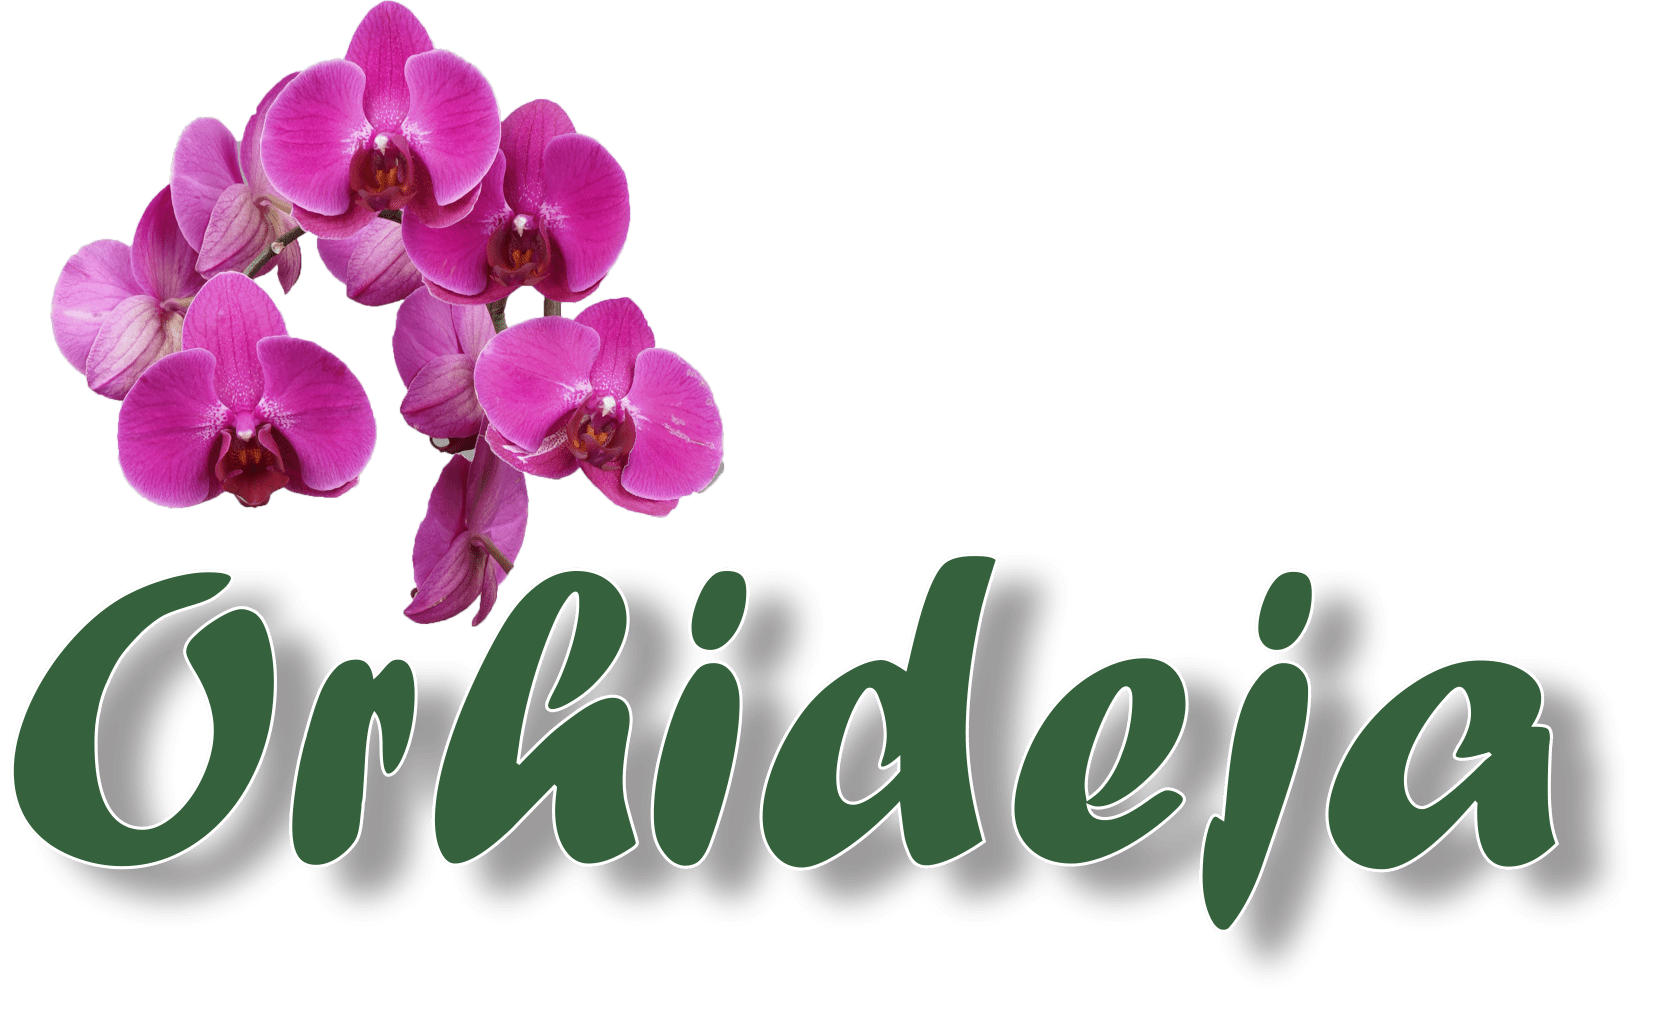 Cvecara Orhideja Valjevo